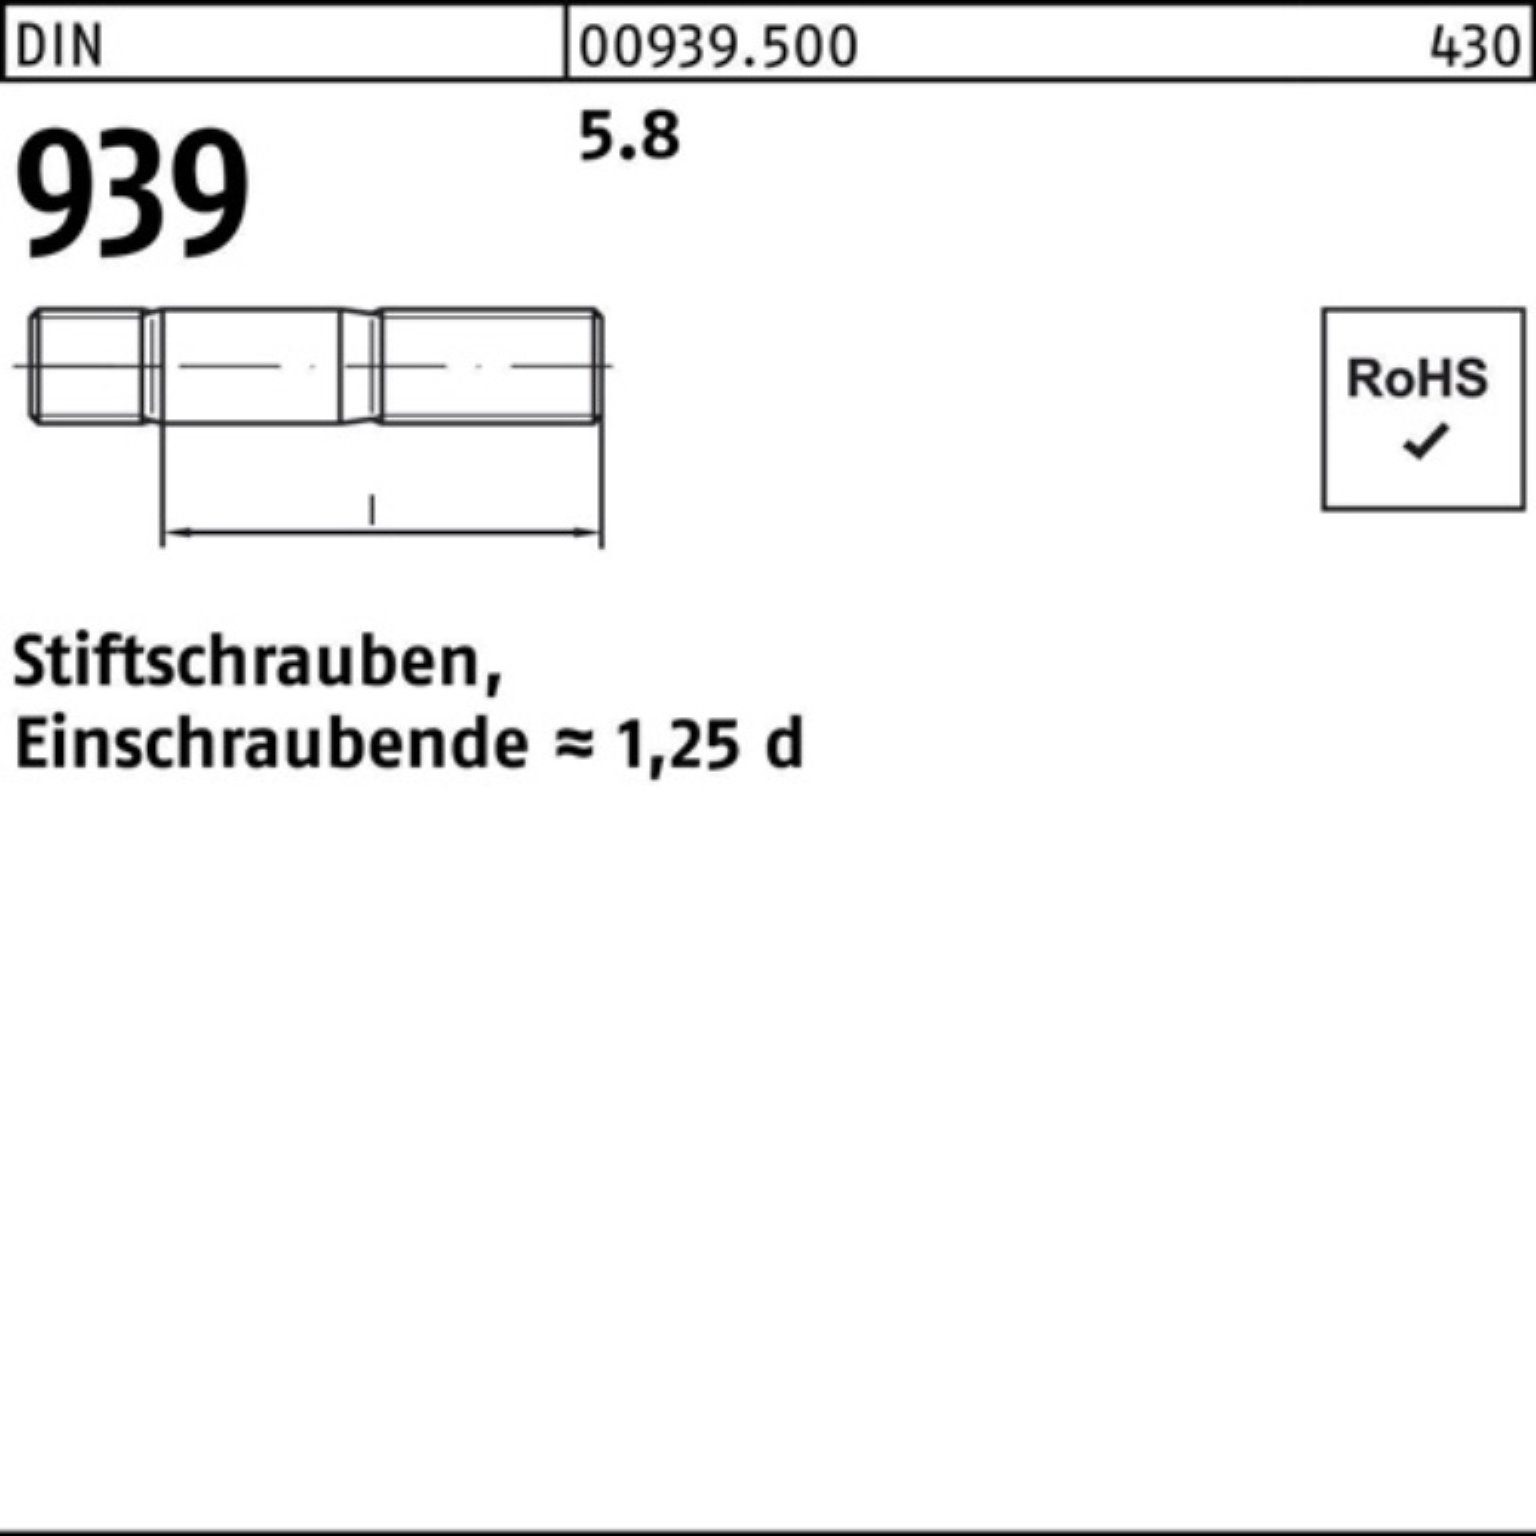 S Stiftschraube M20x Einschraubende=1,25d Reyher 939 5.8 40 100er 25 Pack Stiftschraube DIN